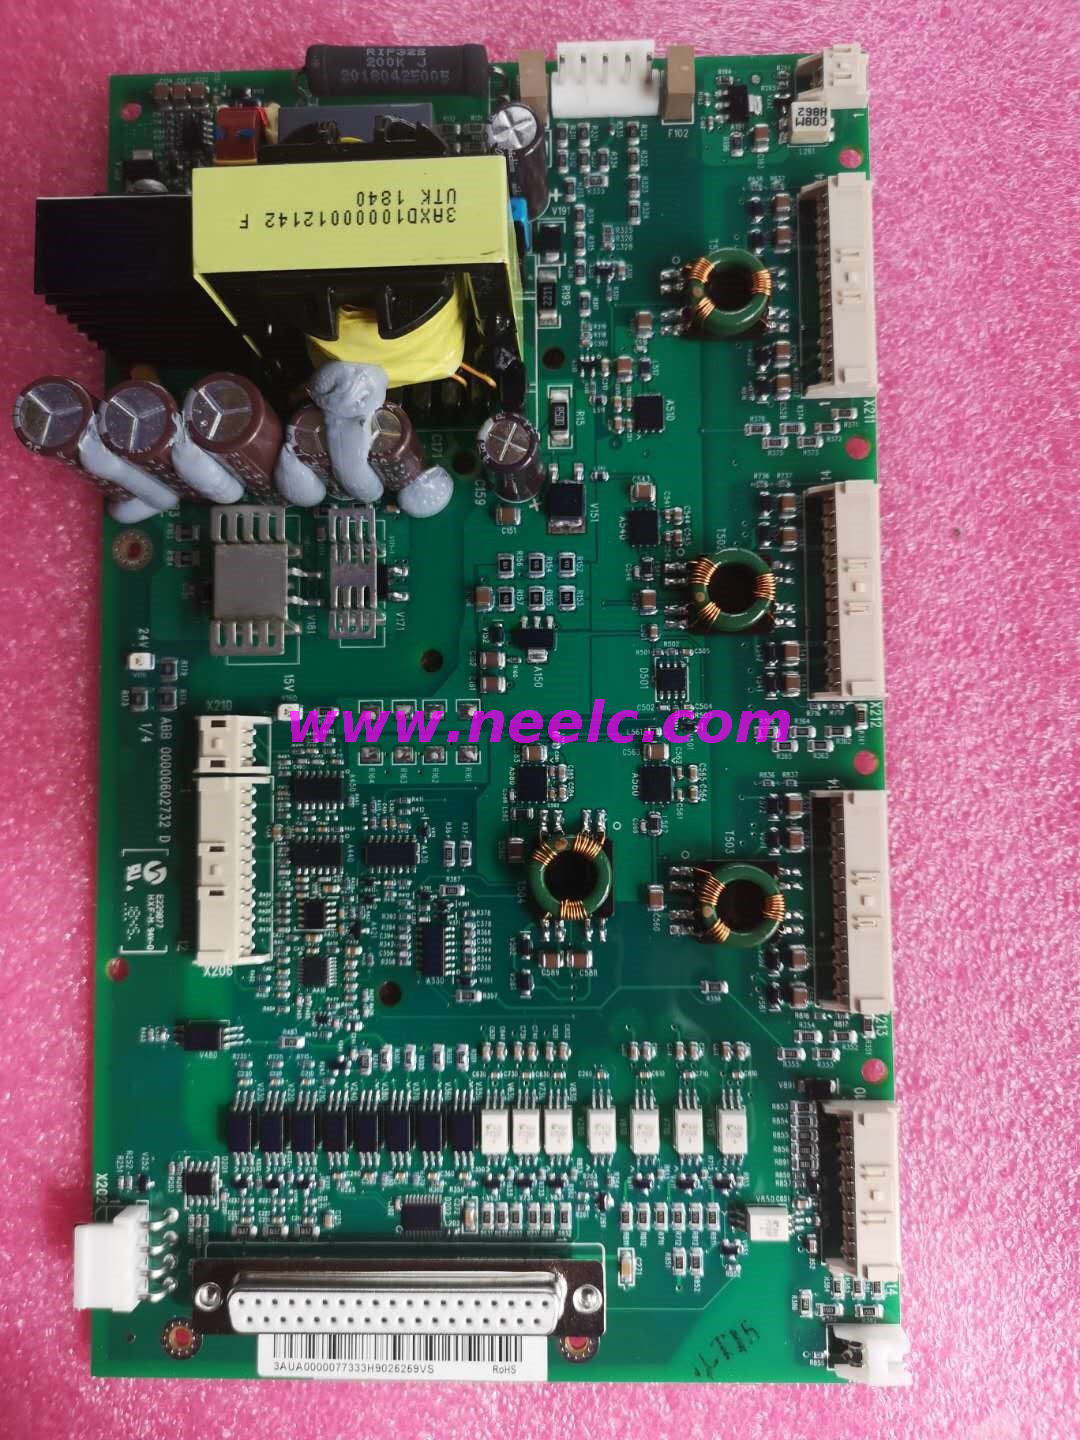 ZINT-592 + N8205 New and original control board